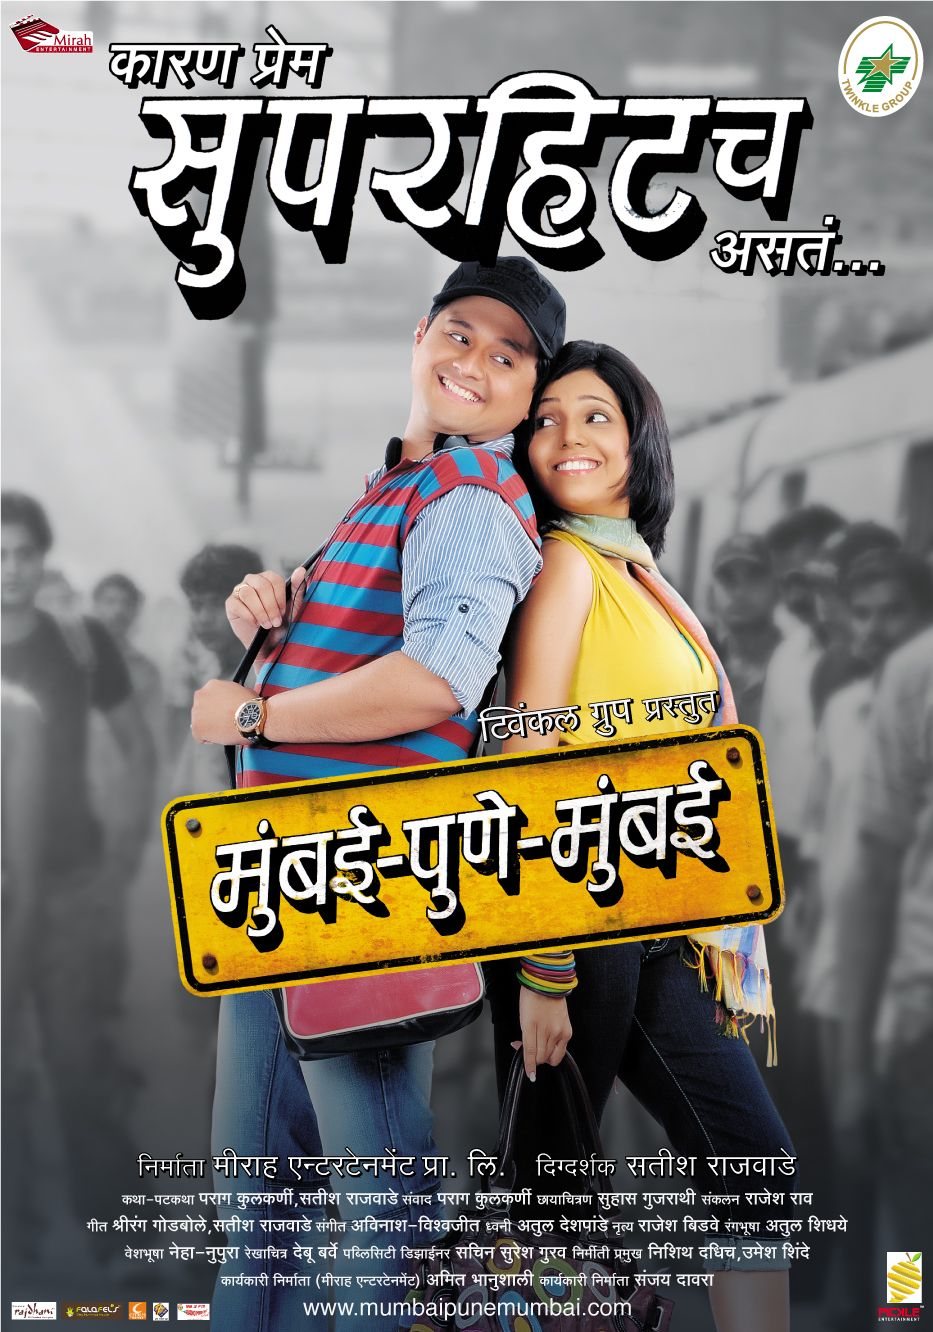 Extra Large Movie Poster Image for Mumbai-Pune-Mumbai (#7 of 12)